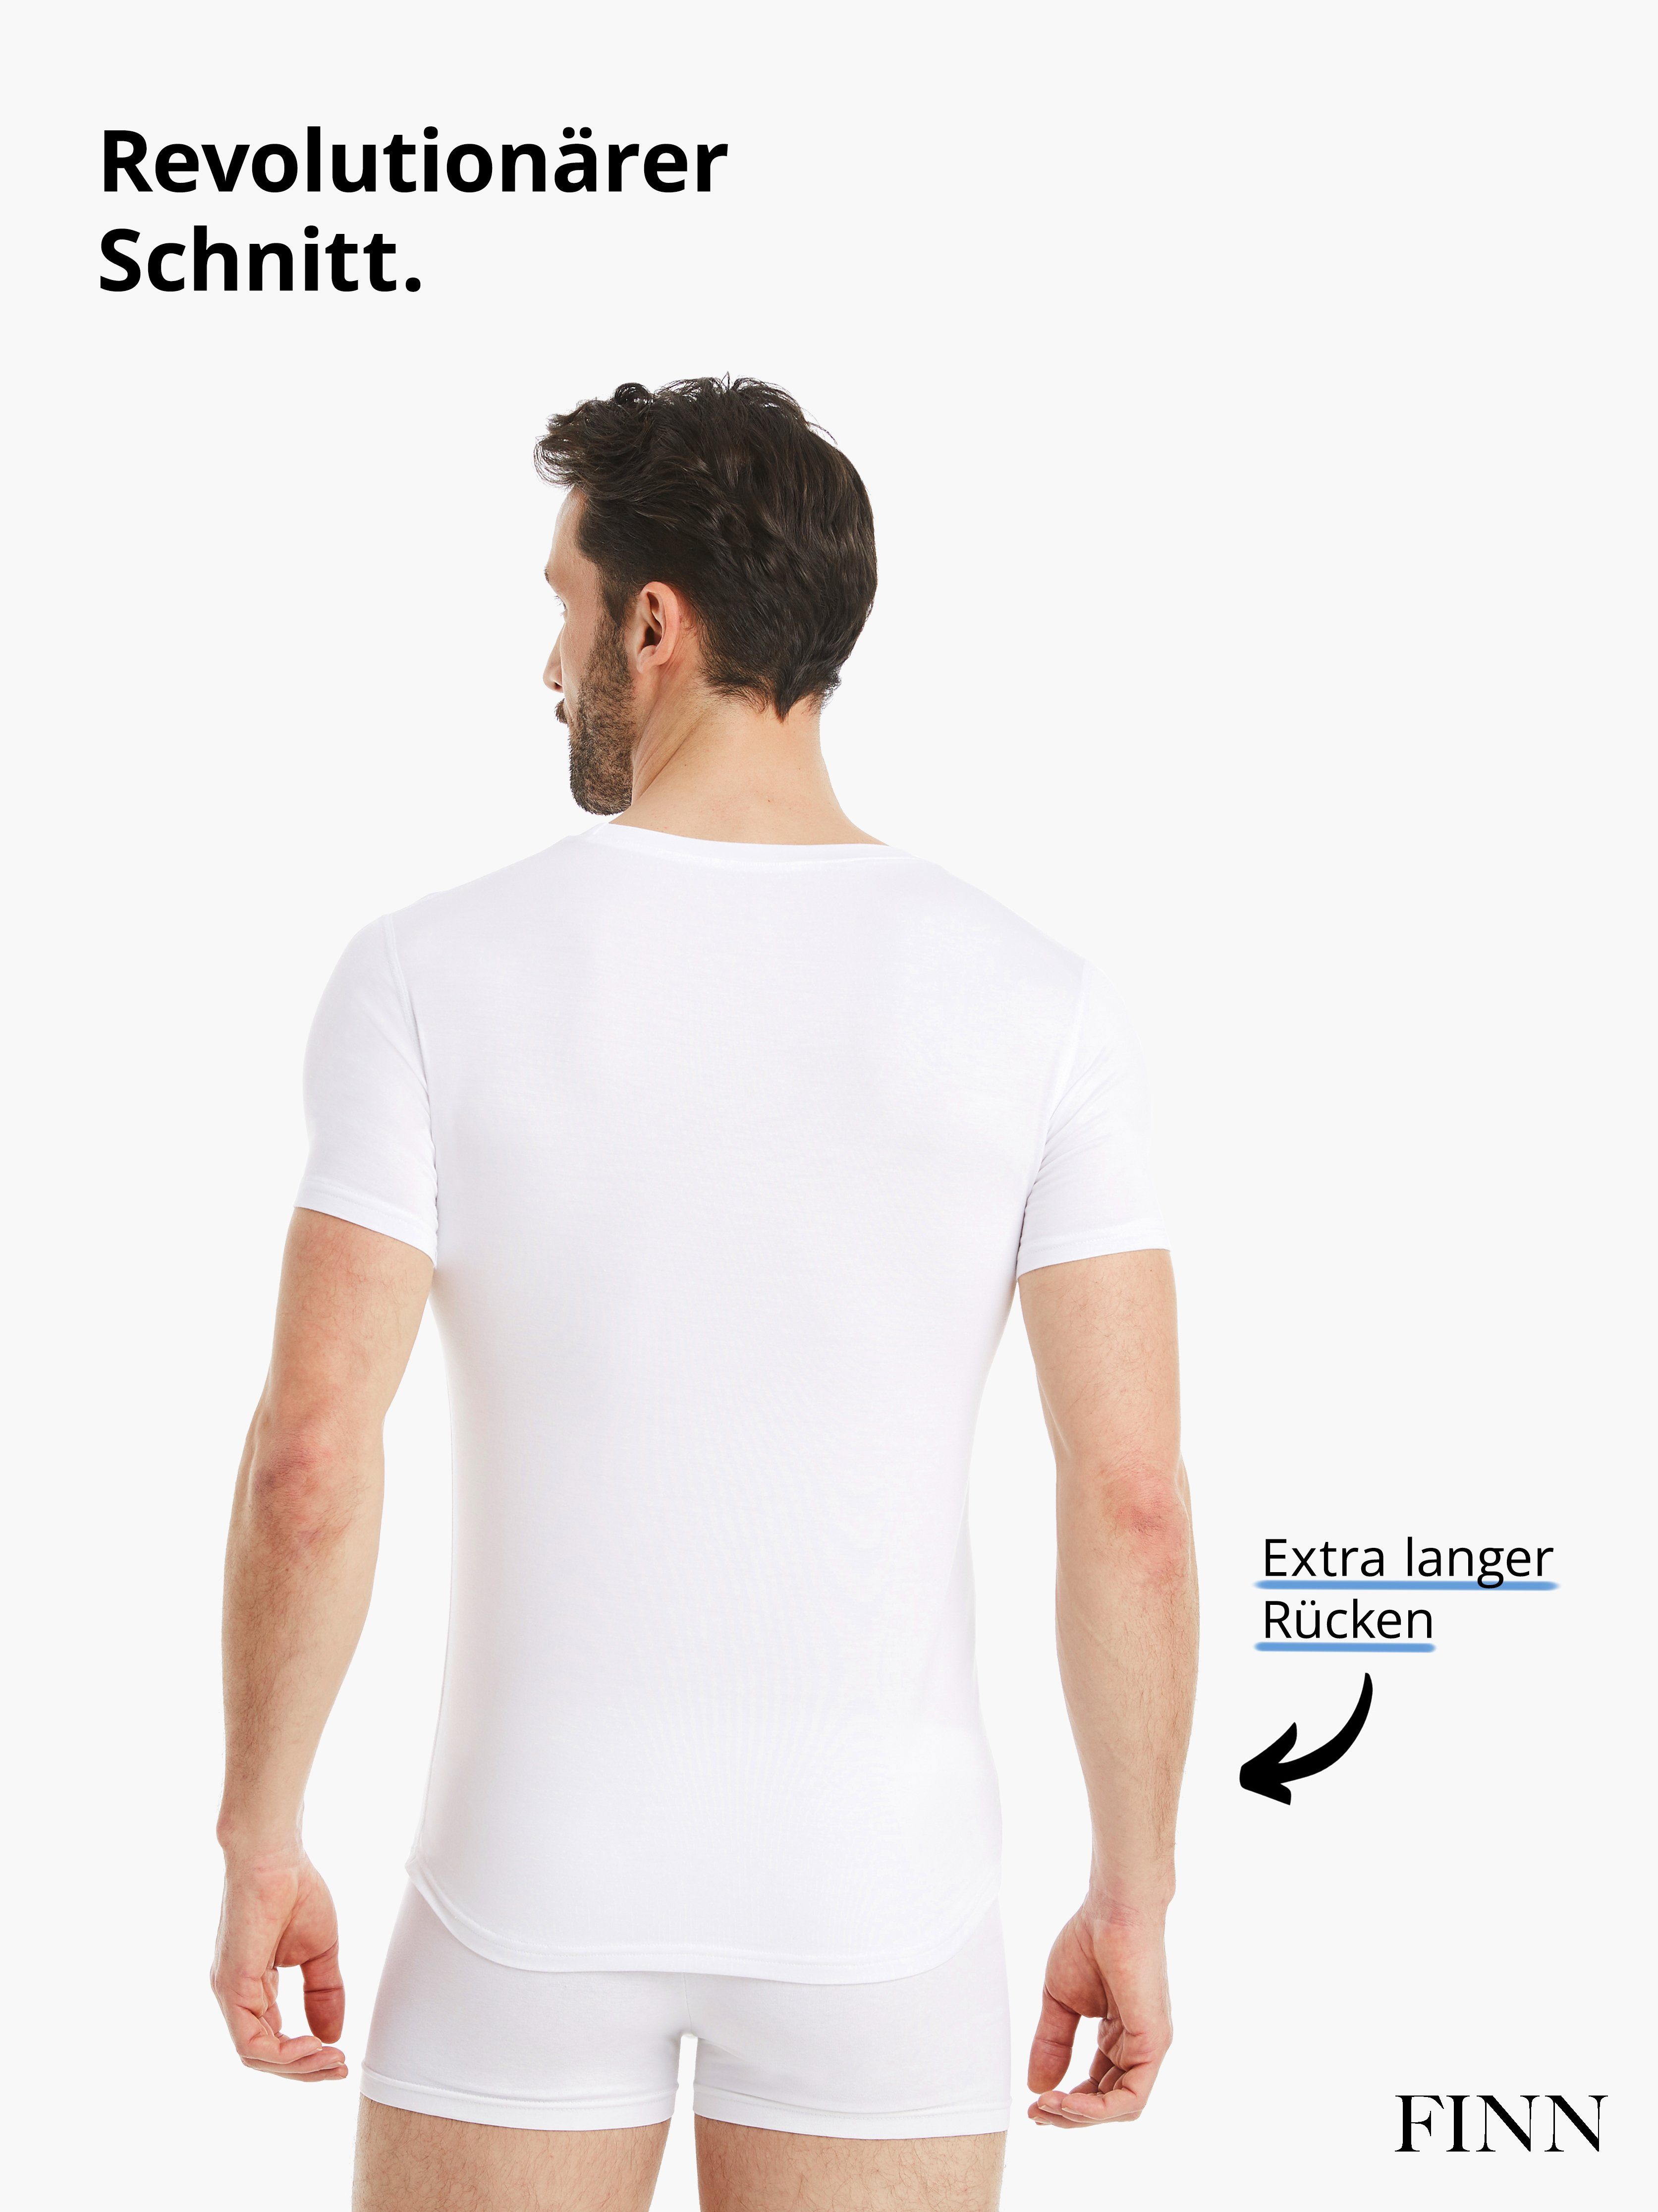 Business maximaler Design Stoff, Micro-Modal Weiß Kurzarm Rundhals FINN mit Unterhemd feiner Tragekomfort Unterhemd Herren